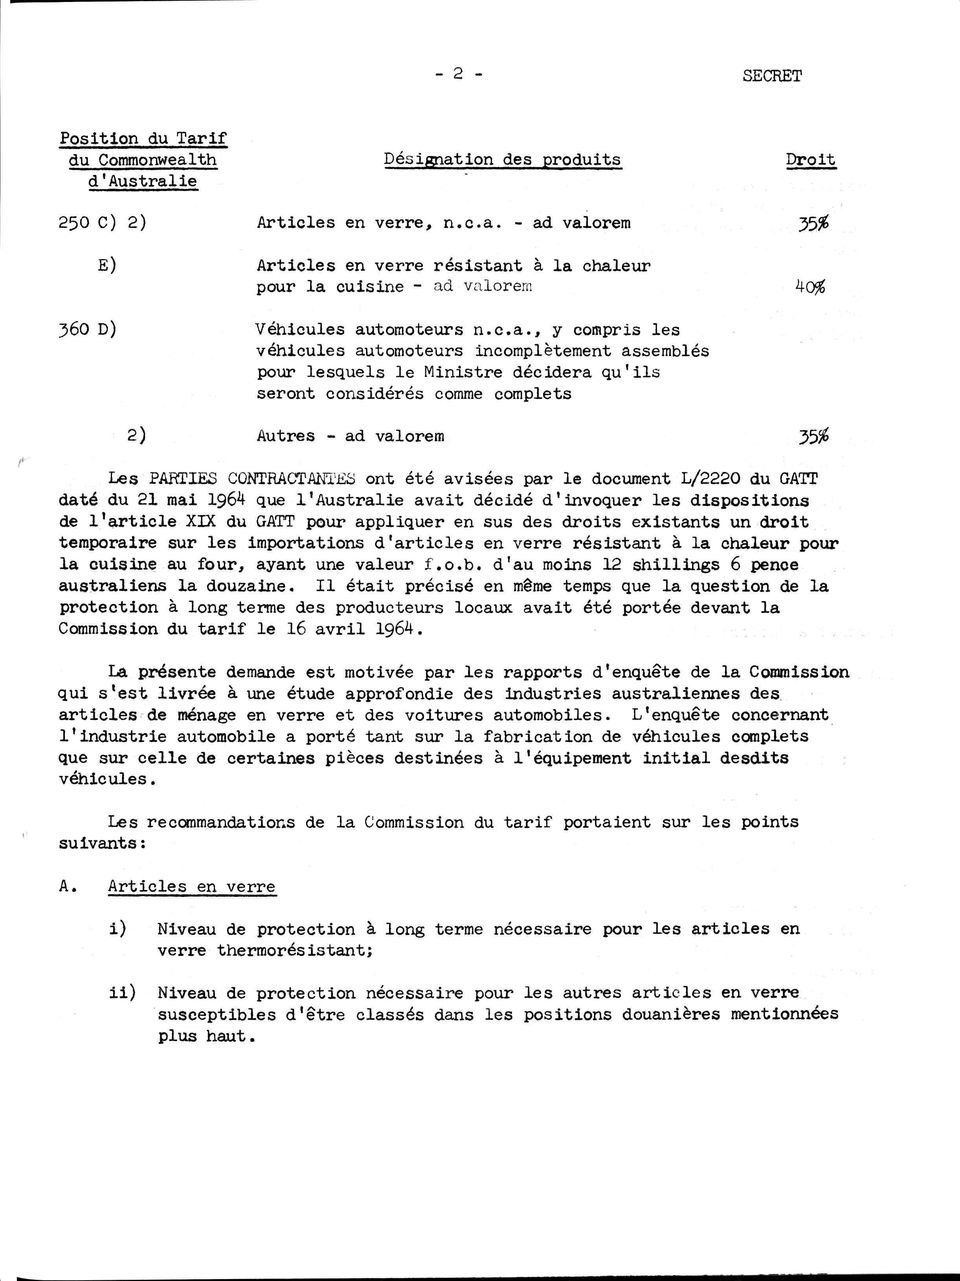 été avisées par le document L/2220 du GATT daté du 21 mai 1964 que l'australie avait décidé d'invoquer les dispositions de l'article XIX du GATT pour appliquer en sus des droits existants un droit